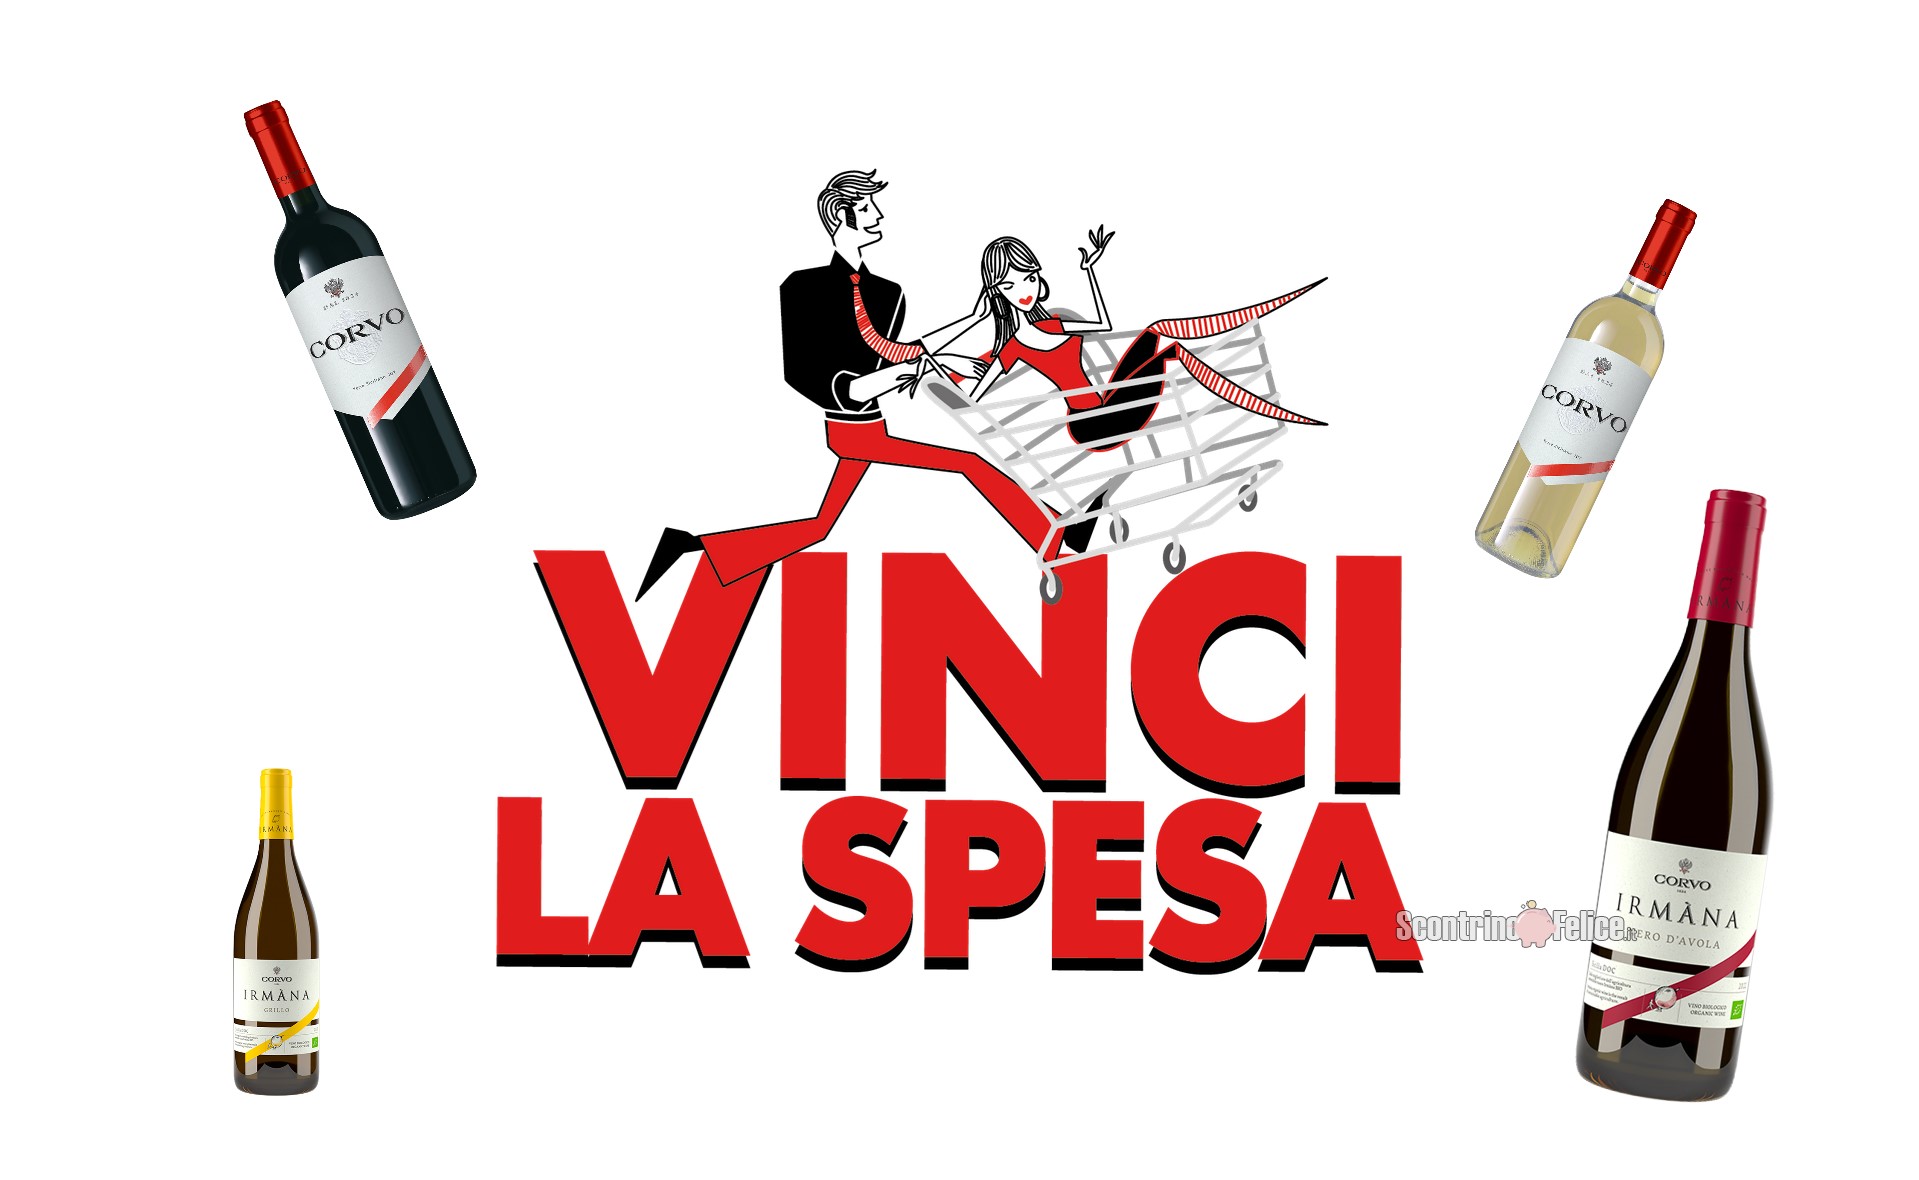 Concorso "Vinci la spesa con Corvo": in palio buoni spesa da 100 euro e 5.000 euro!